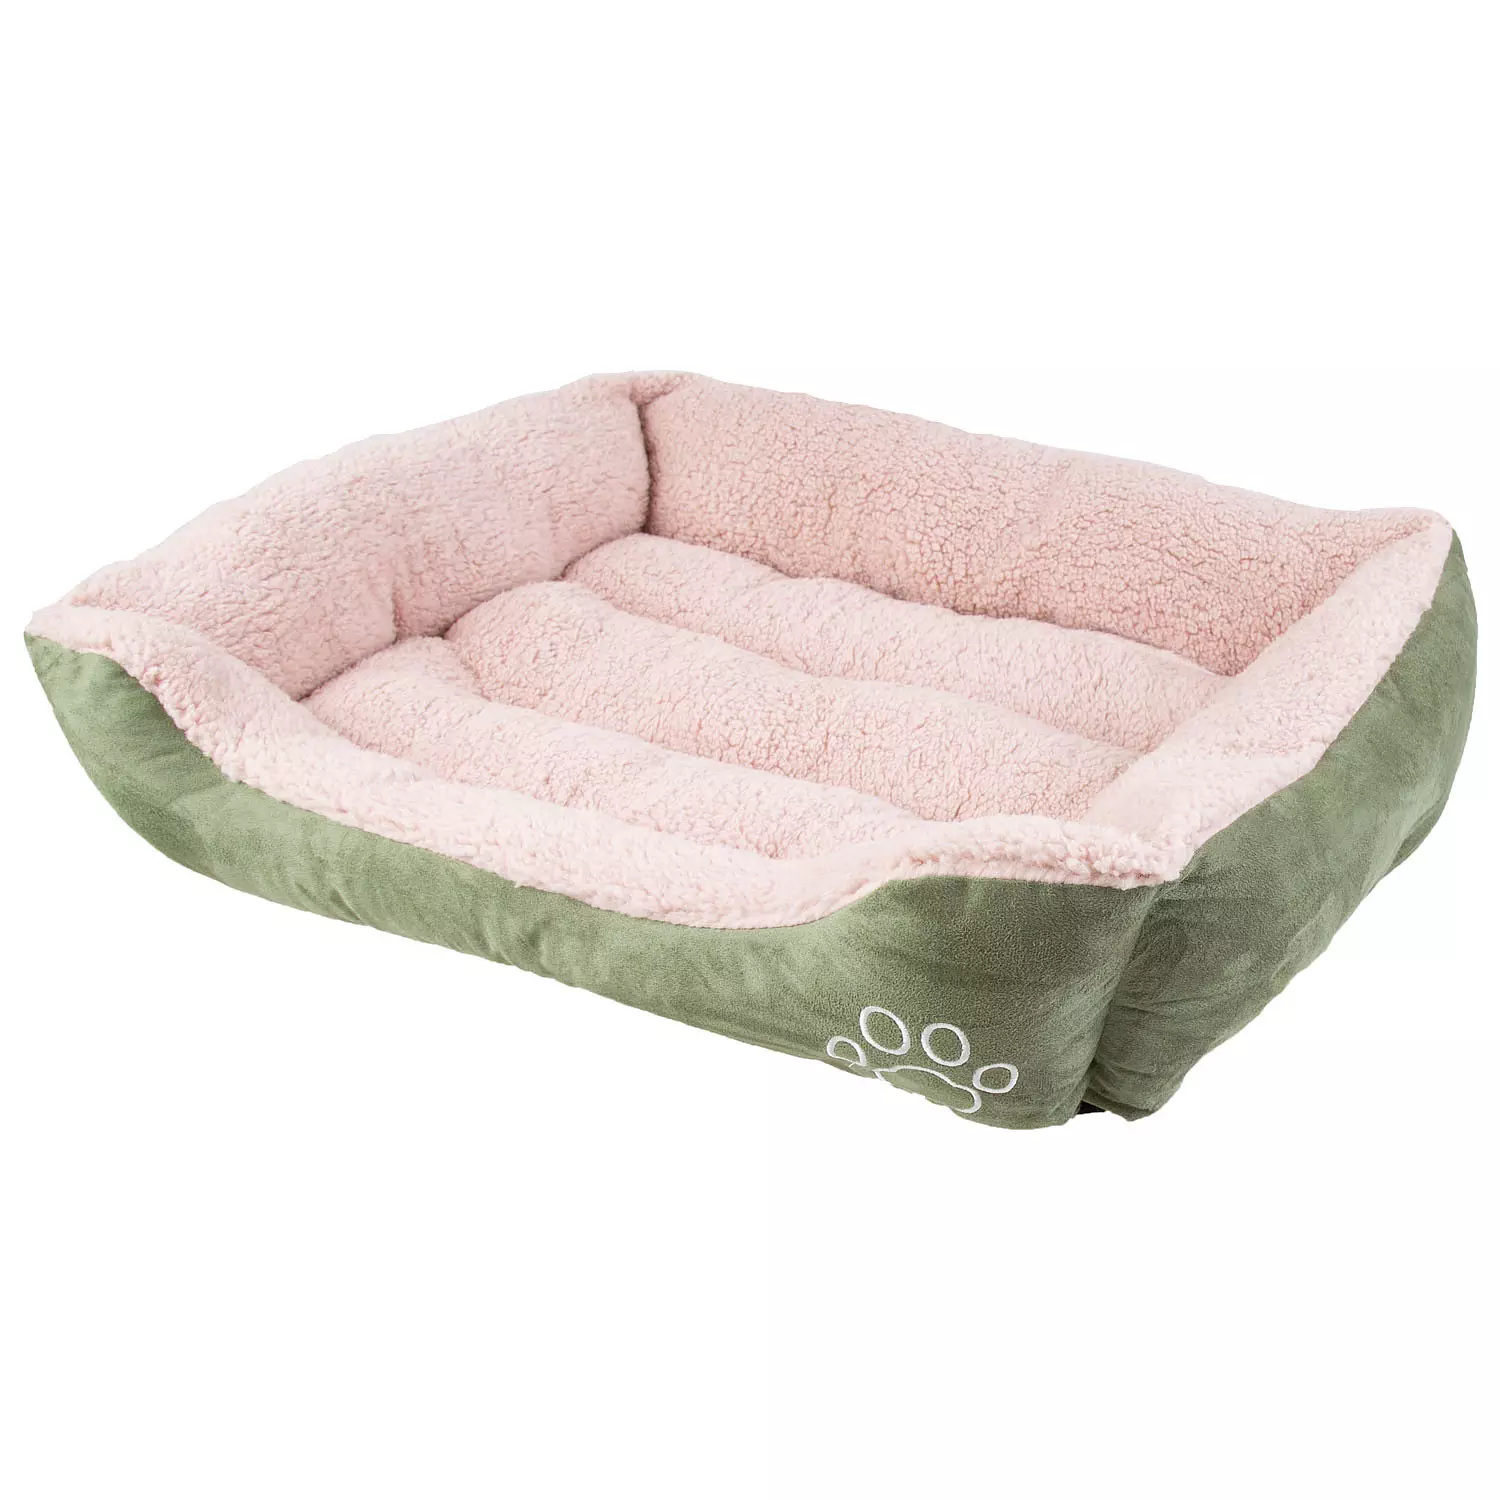 Faux suede, rectangular pet bed, medium, green & blush